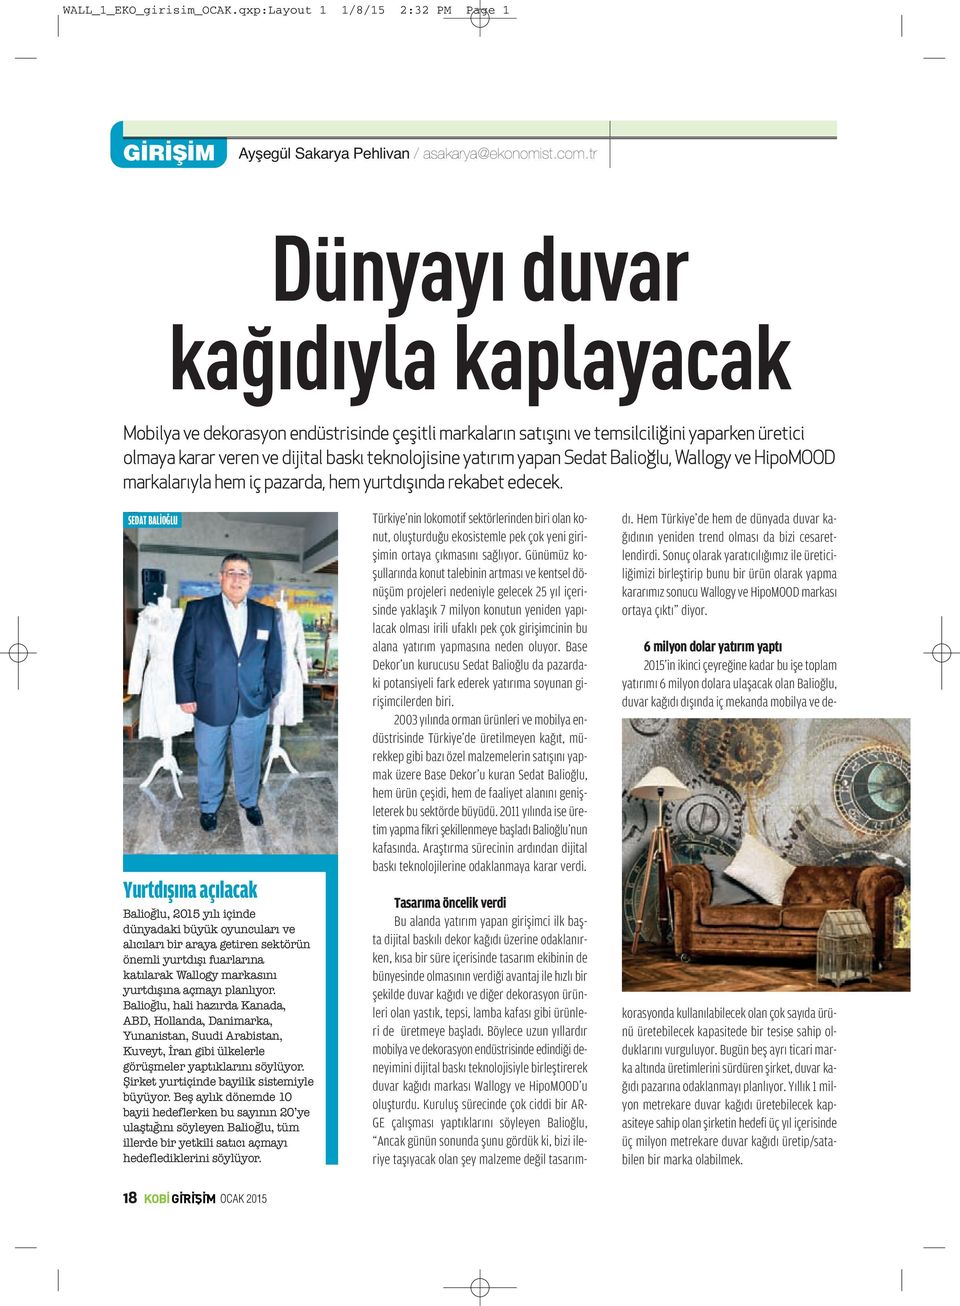 yapan Sedat Balioğlu, Wallogy ve HipoMOOD markalarıyla hem iç pazarda, hem yurtdışında rekabet edecek.